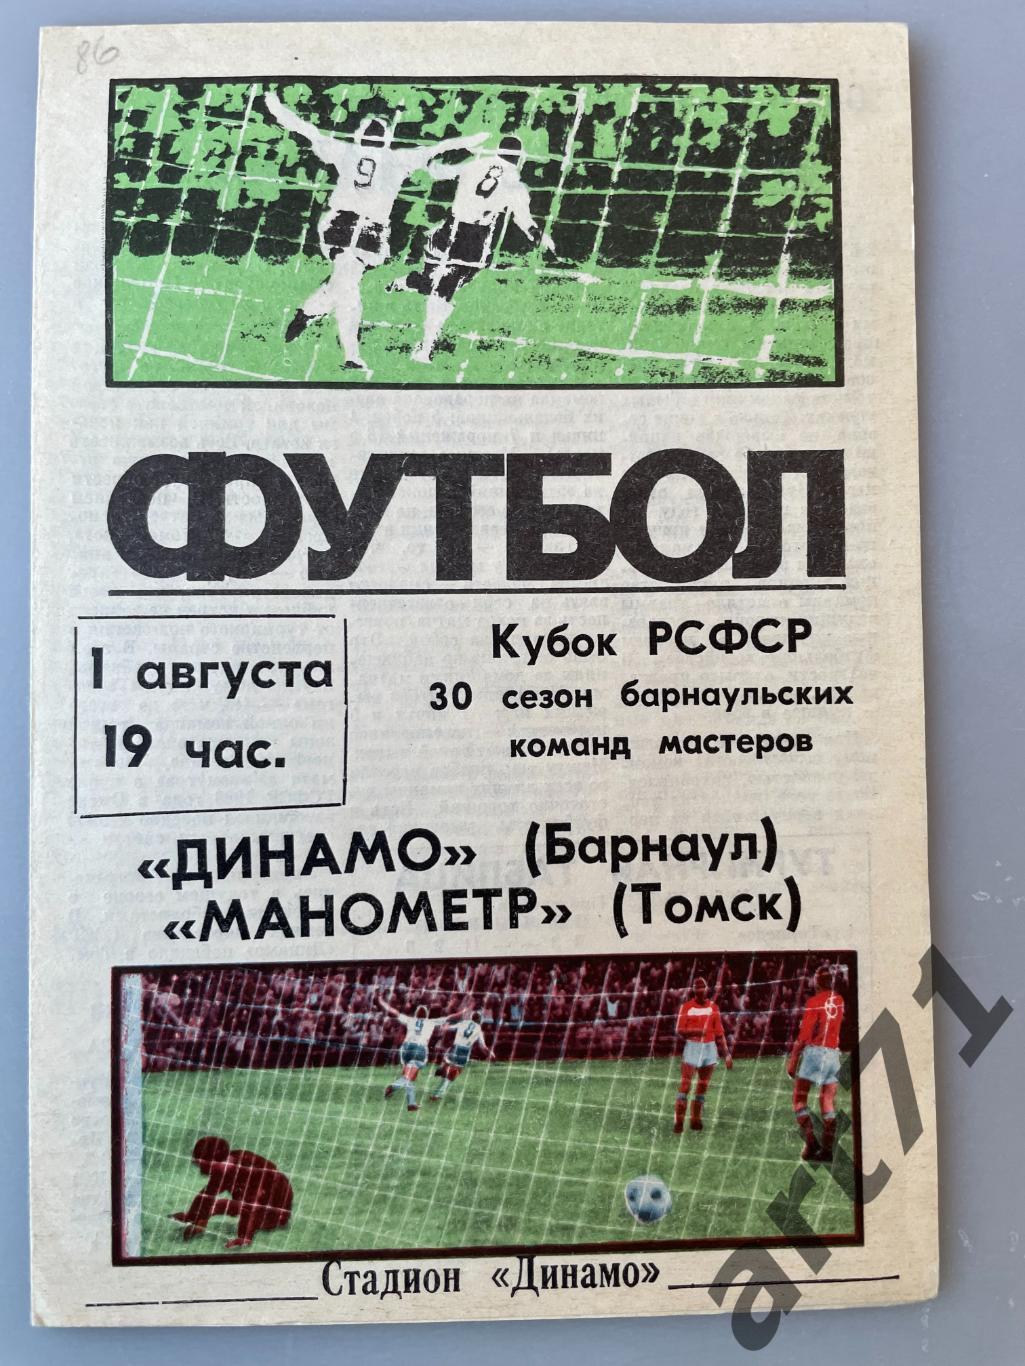 Динамо Барнаул - Манометр Томск 1986 кубок РСФСР